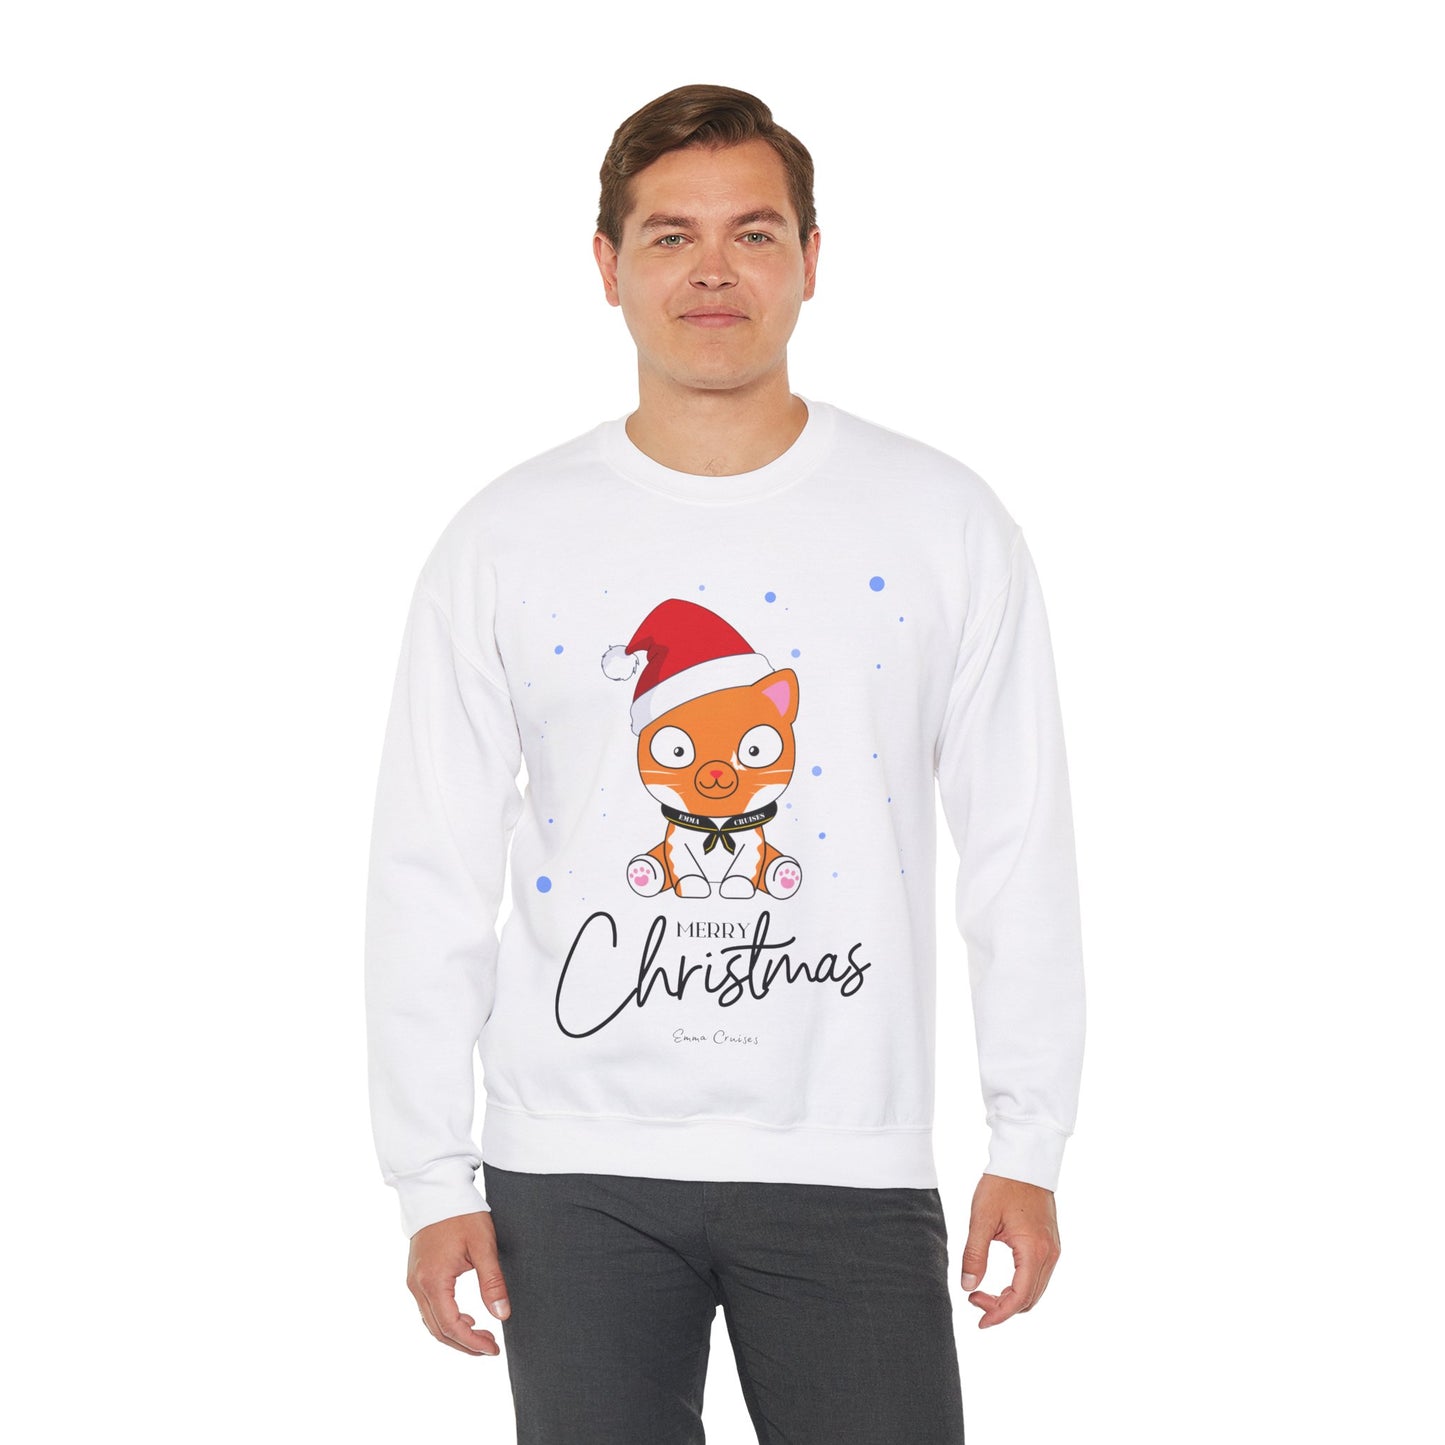 Frohe Weihnachten - UNISEX Crewneck Sweatshirt